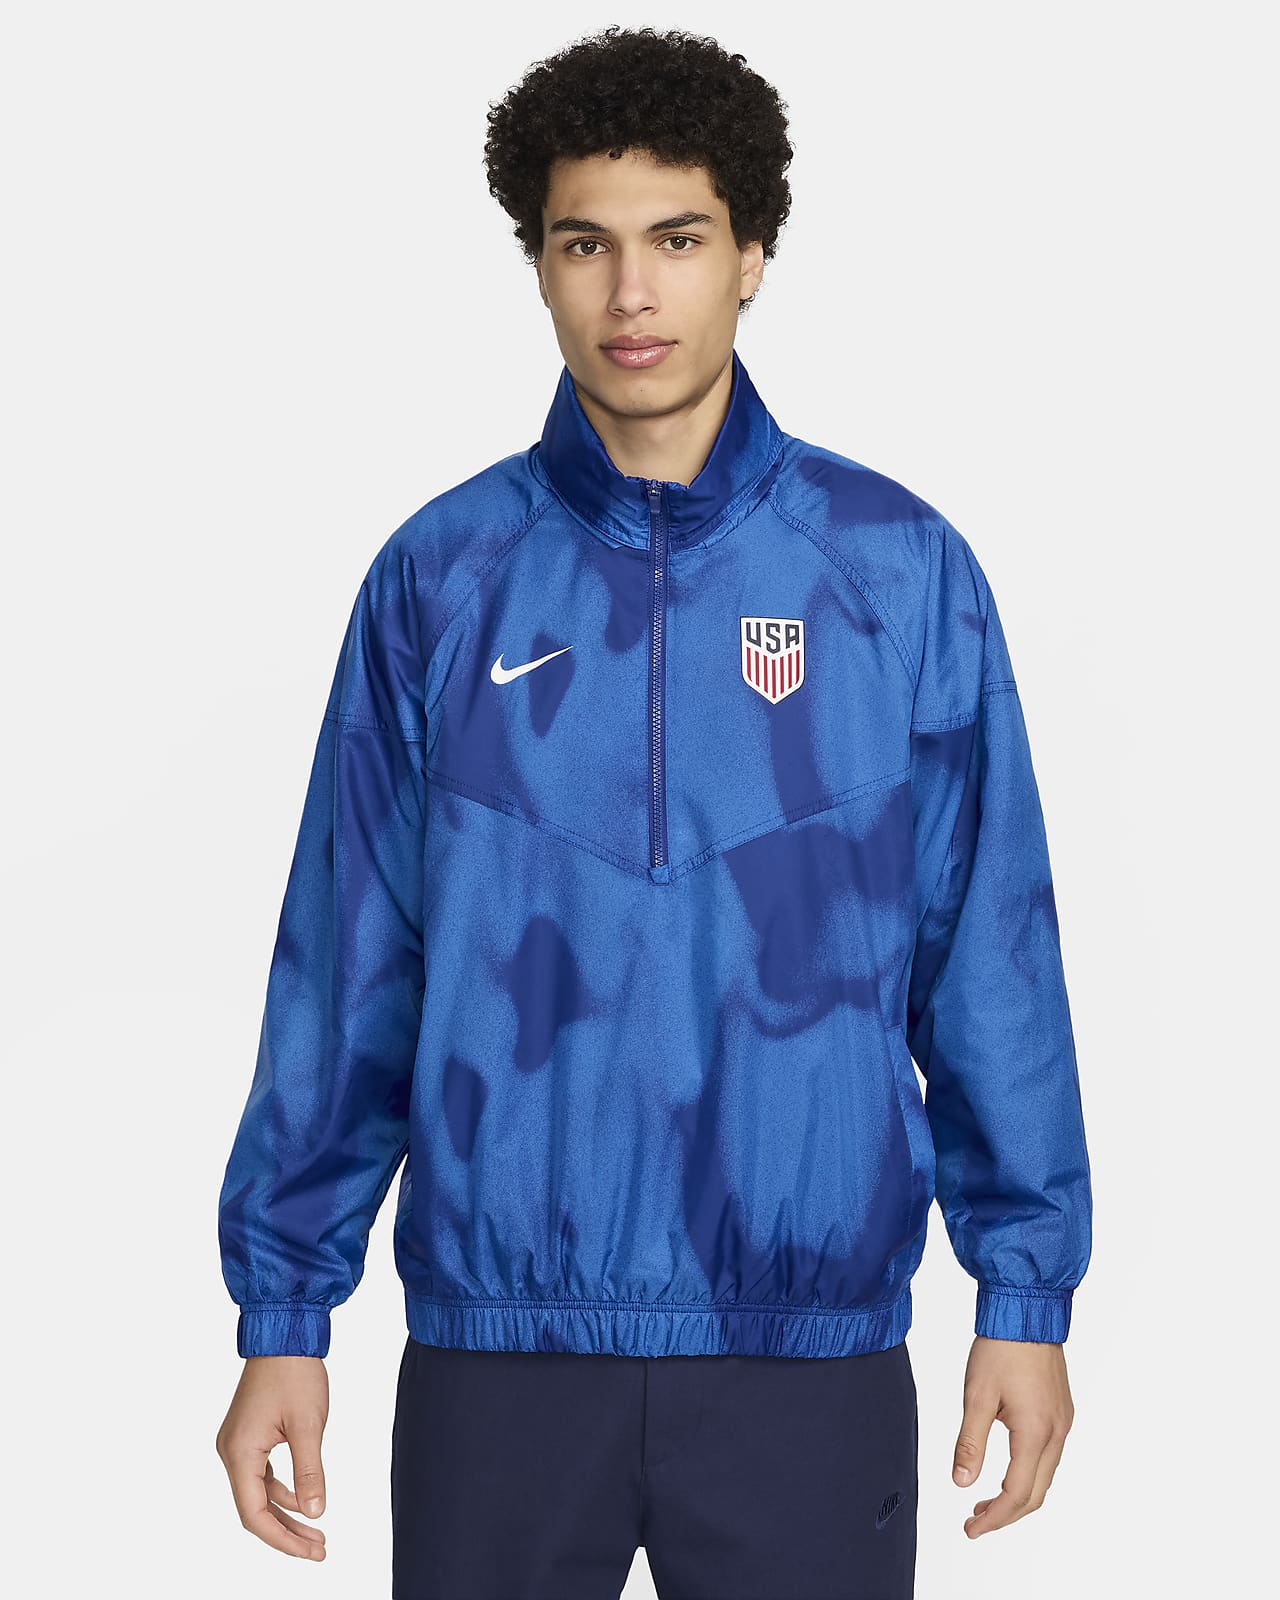 USMNT Windrunner Men's Nike Soccer Anorak Jacket